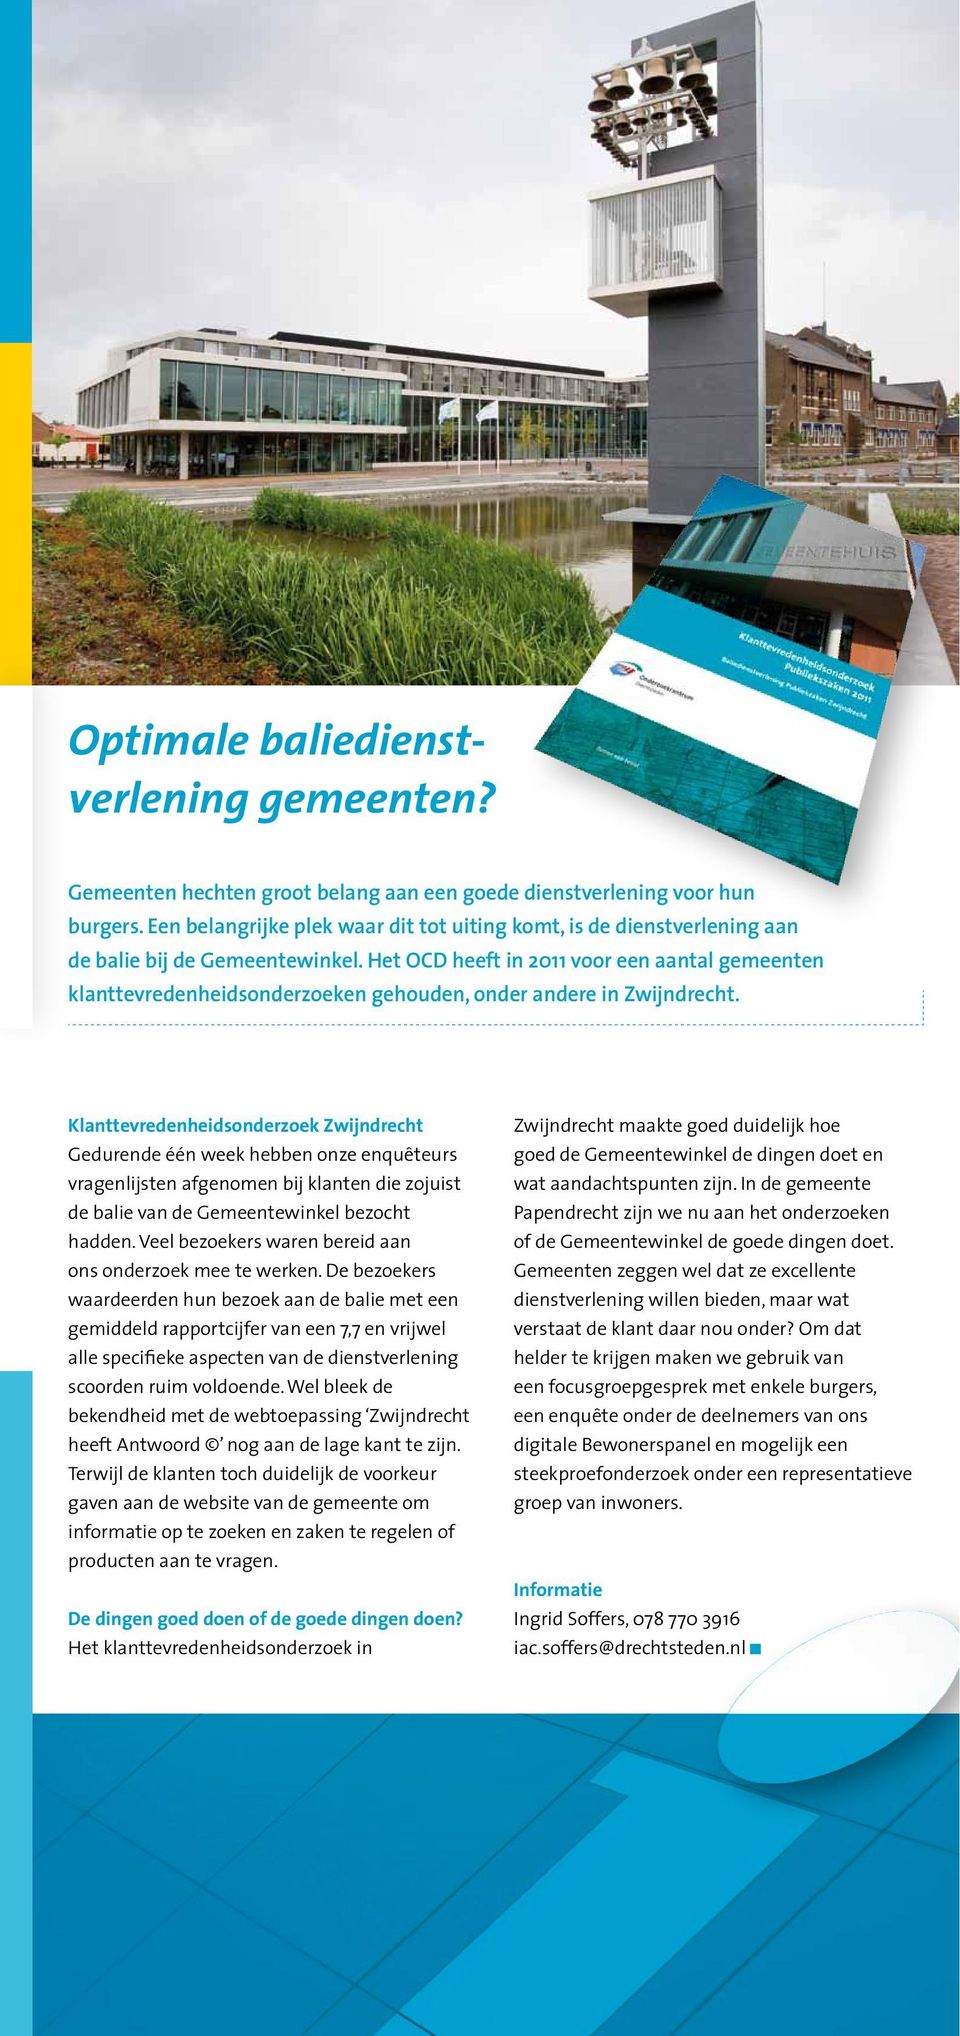 Het OCD heeft in 2011 voor een aantal gemeenten klanttevredenheidsonderzoeken gehouden, onder andere in Zwijndrecht.